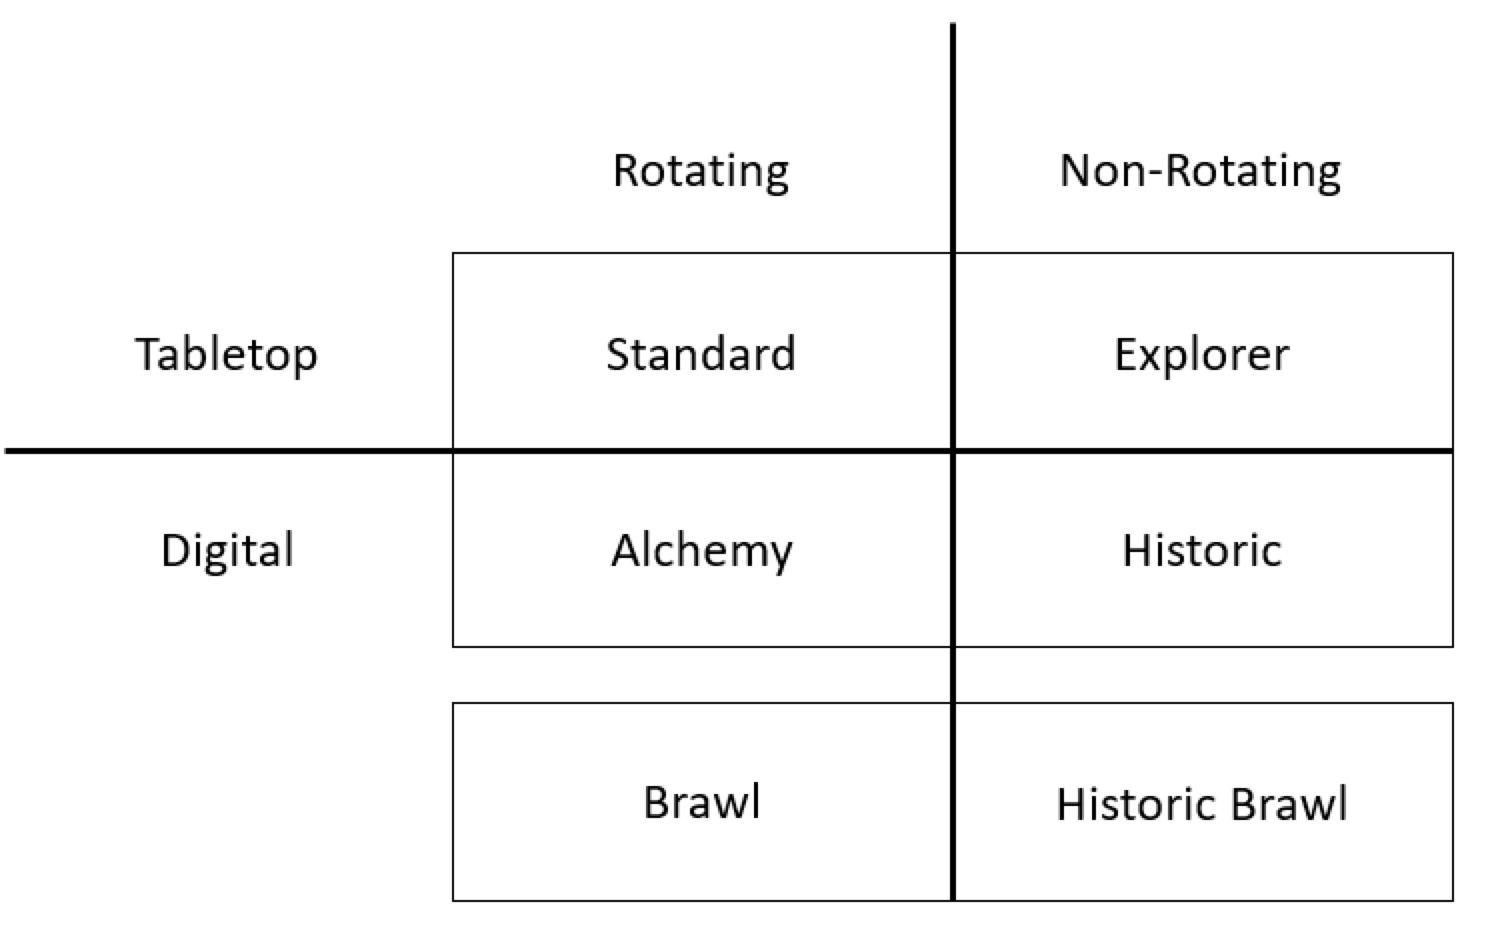 Tableau montrant les formats sur table et formats numériques regroupés selon les formats avec rotation (Standard, Alchemy et Brawl) et les formats sans rotation (Explorer, Historique et Brawl Historique)